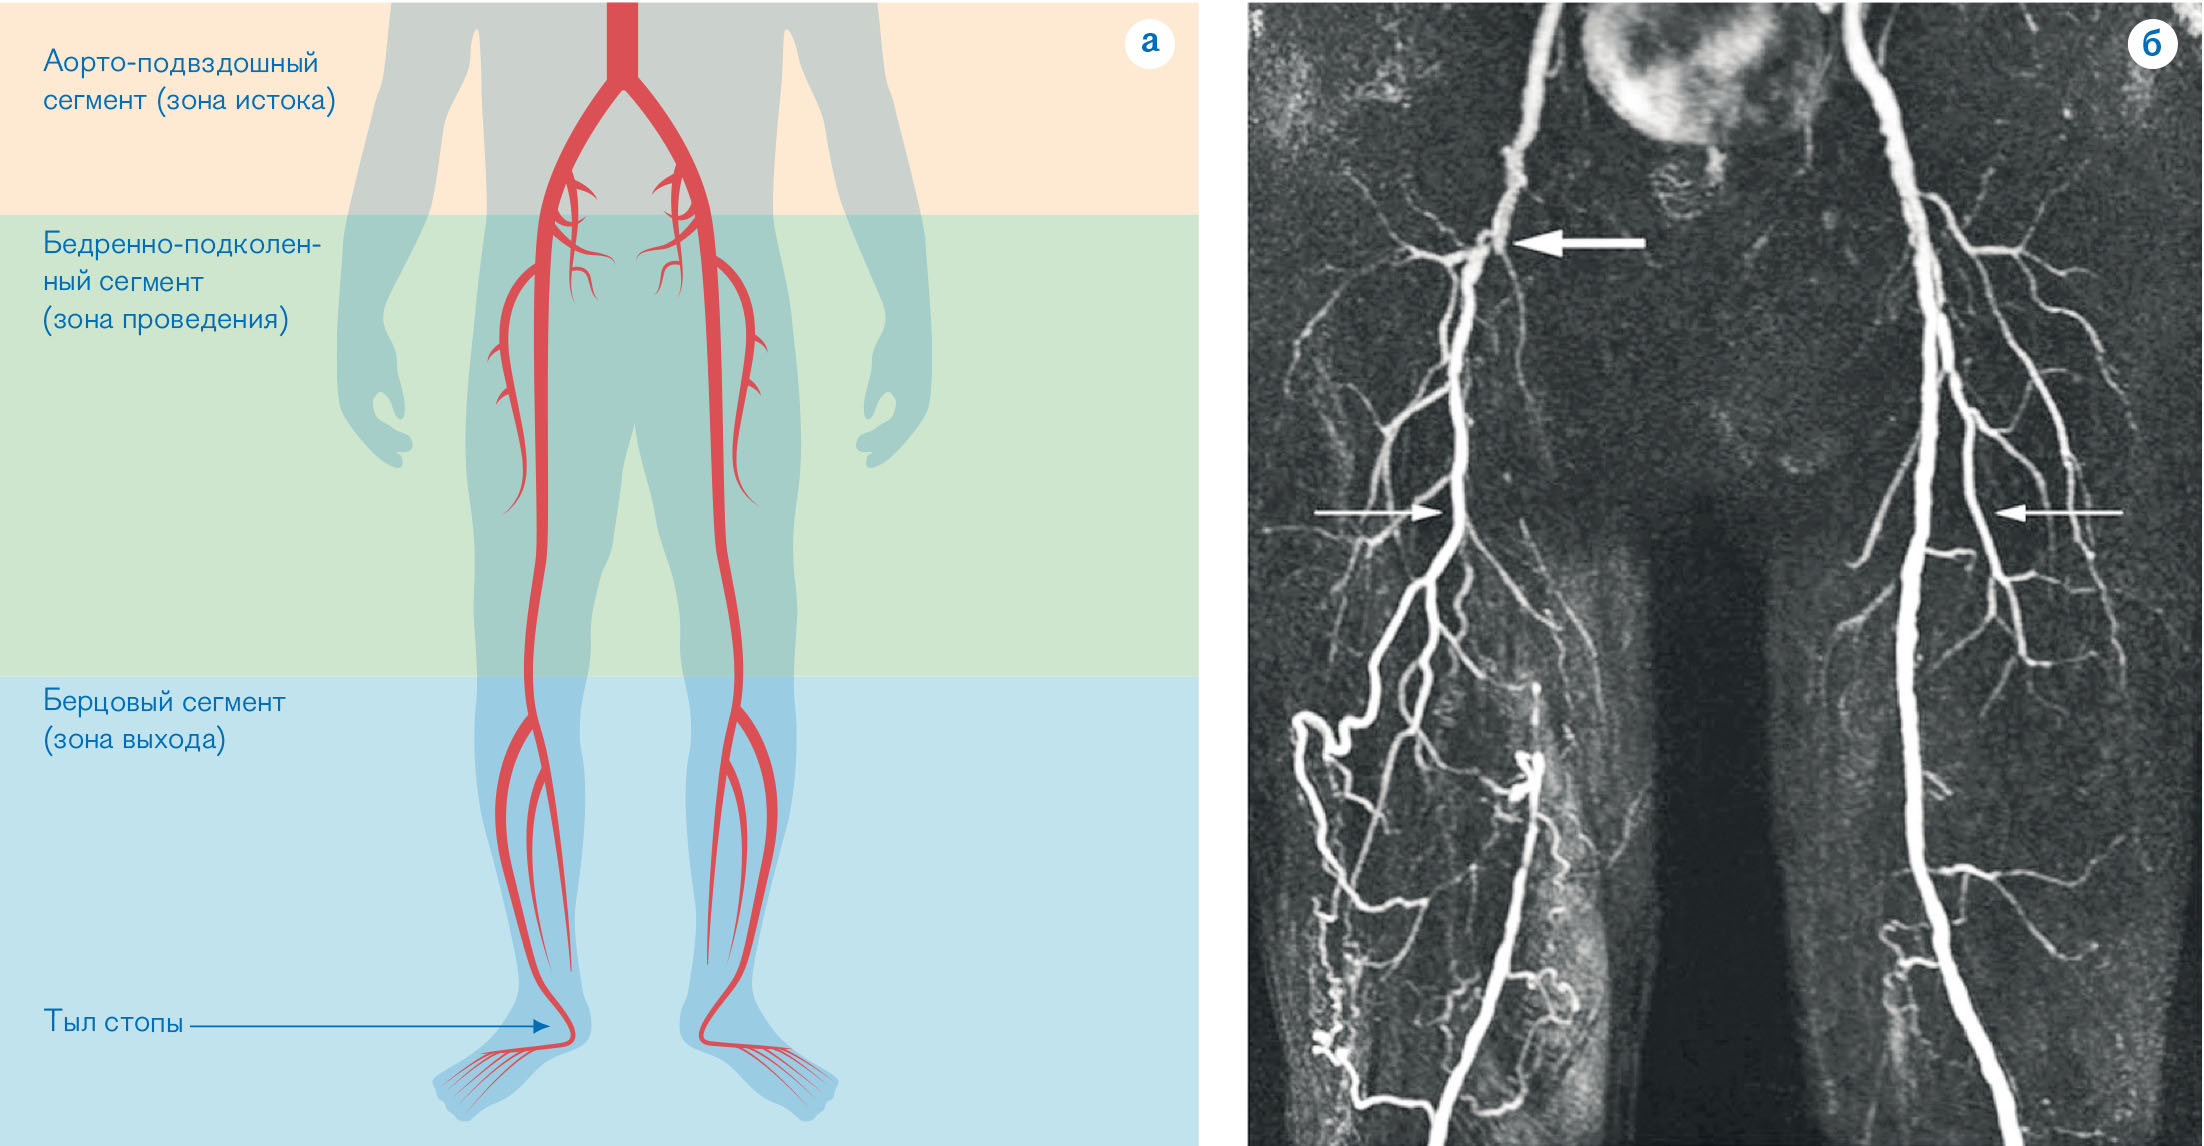 Тромбоз подвздошной вены. Окклюзионные заболевания артерий нижних конечностей. Окклюзия бедренной артерии нижней конечности. Окклюзия бедренной артерии Хан-2а. Окклюзия ПБА нижних конечностей.